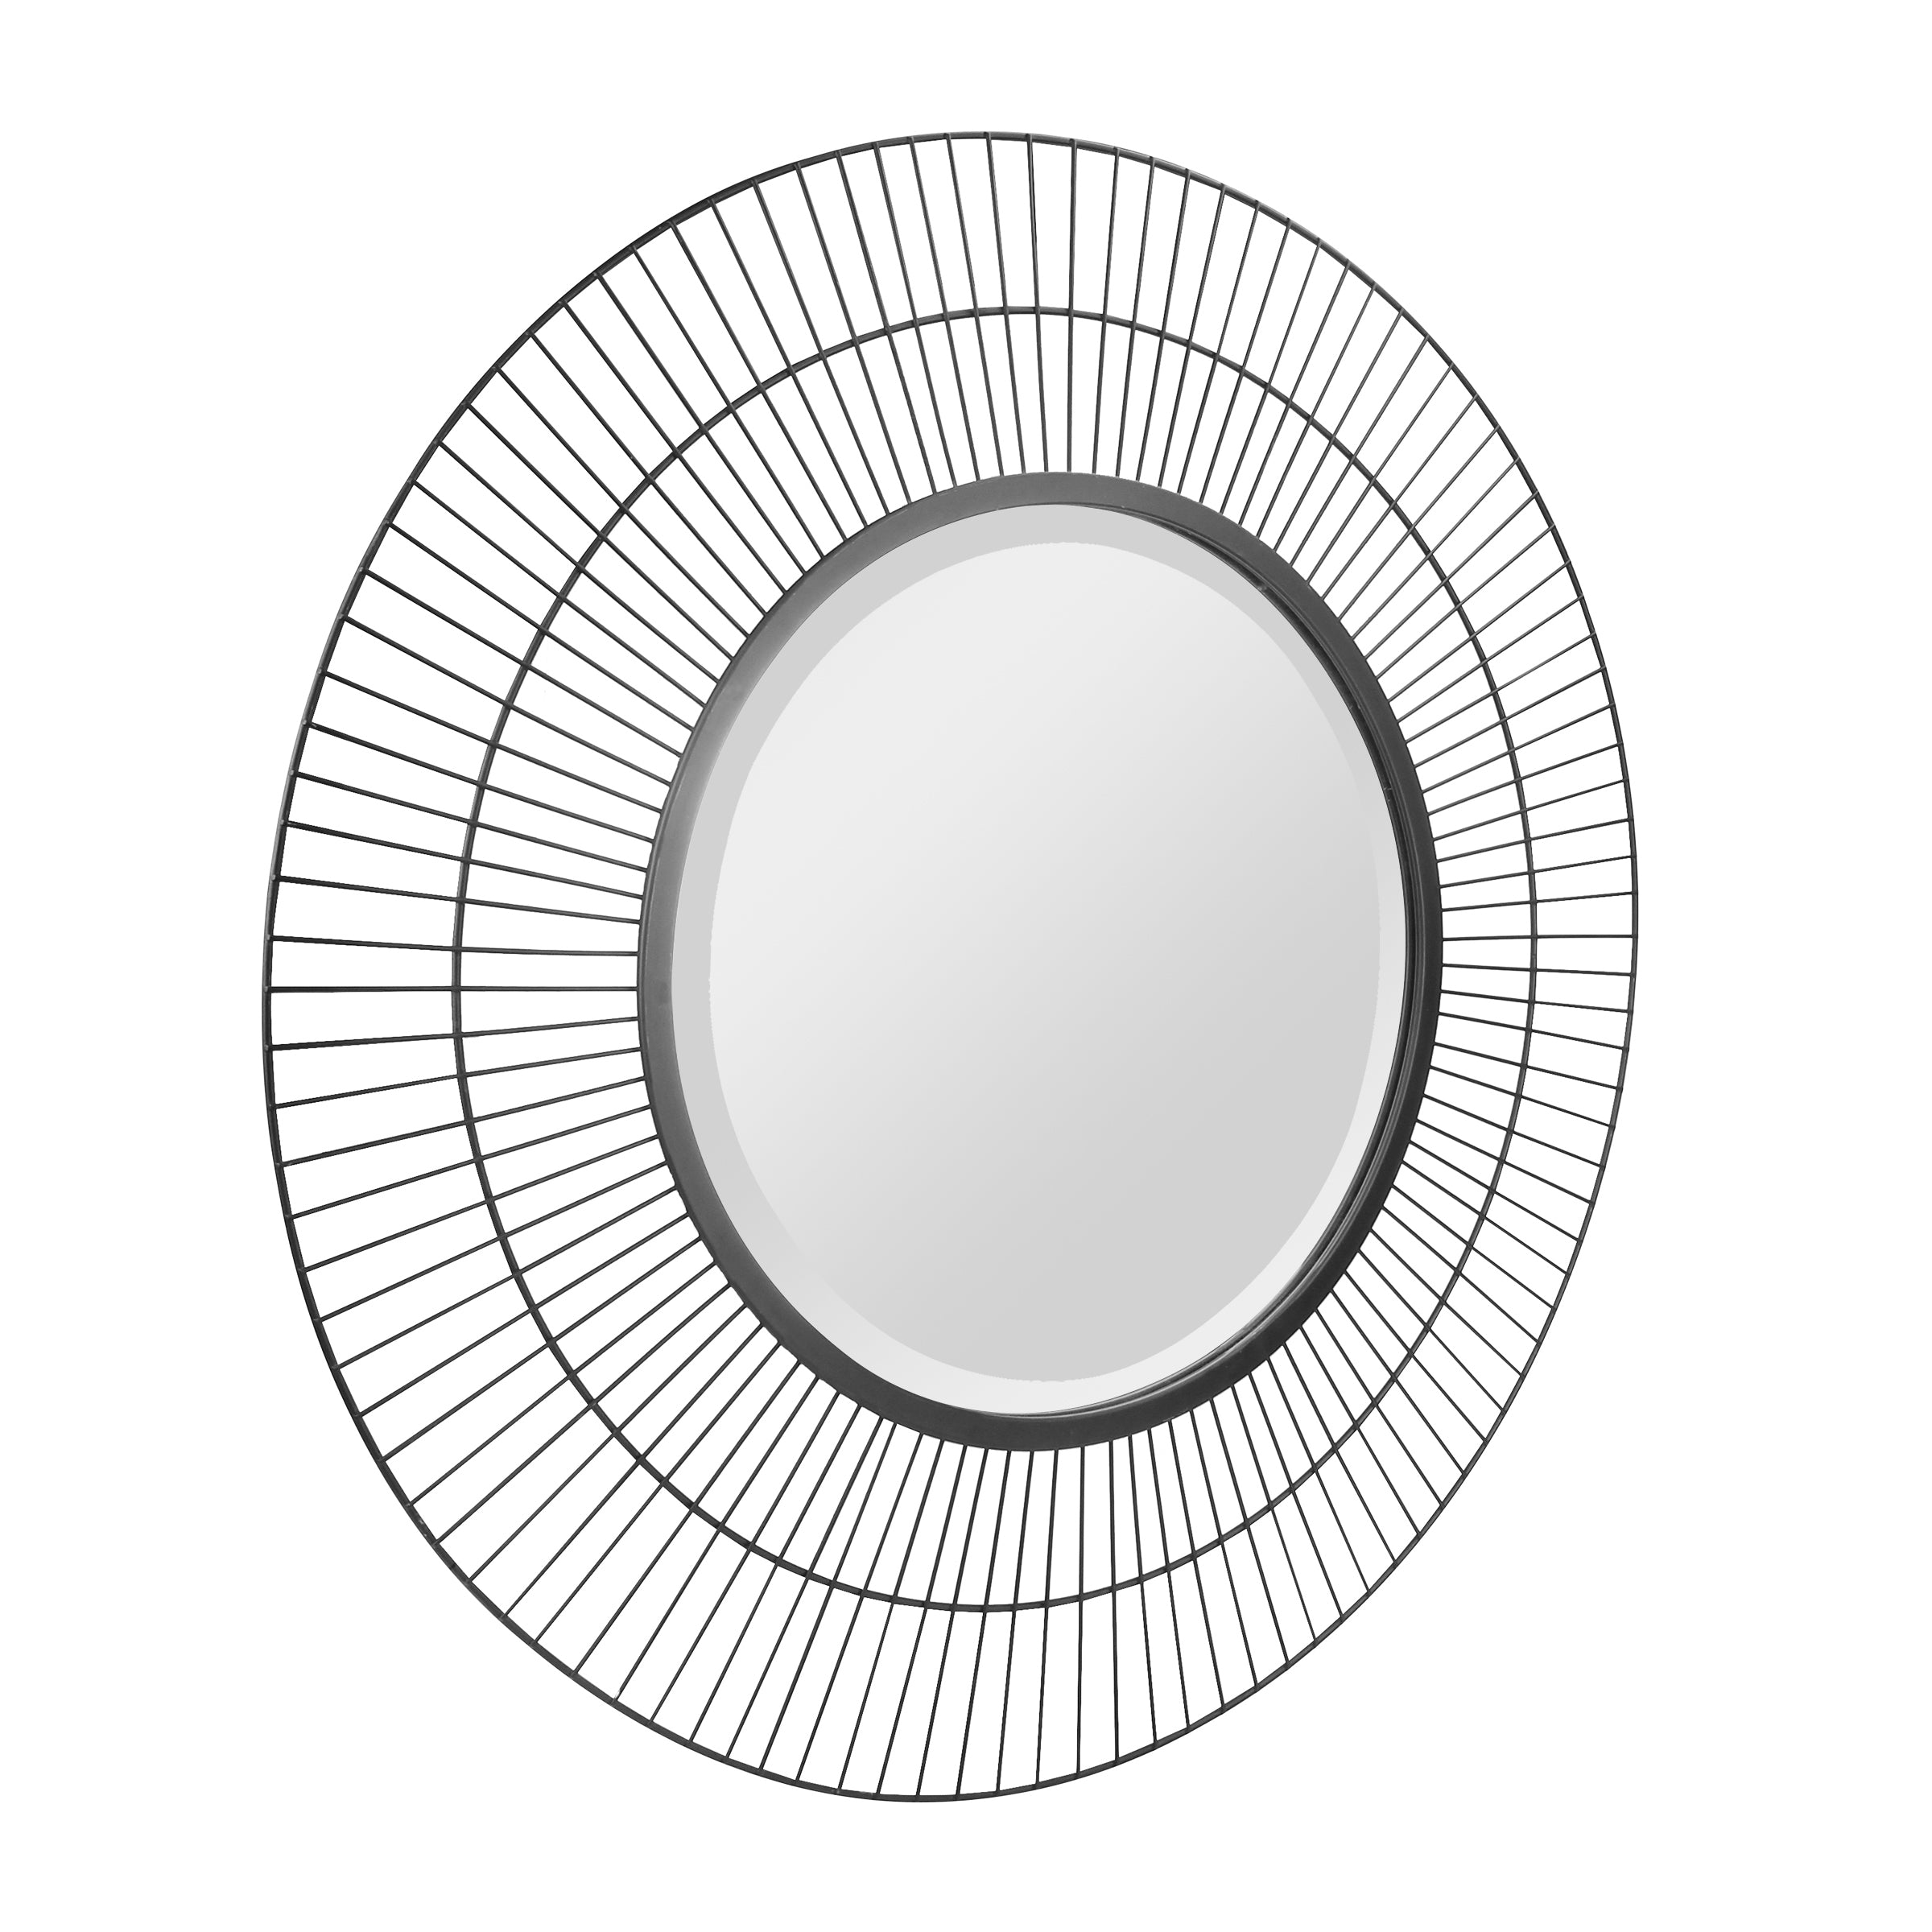 28" Decorative Modern Round Metal Wire Wall Mirror